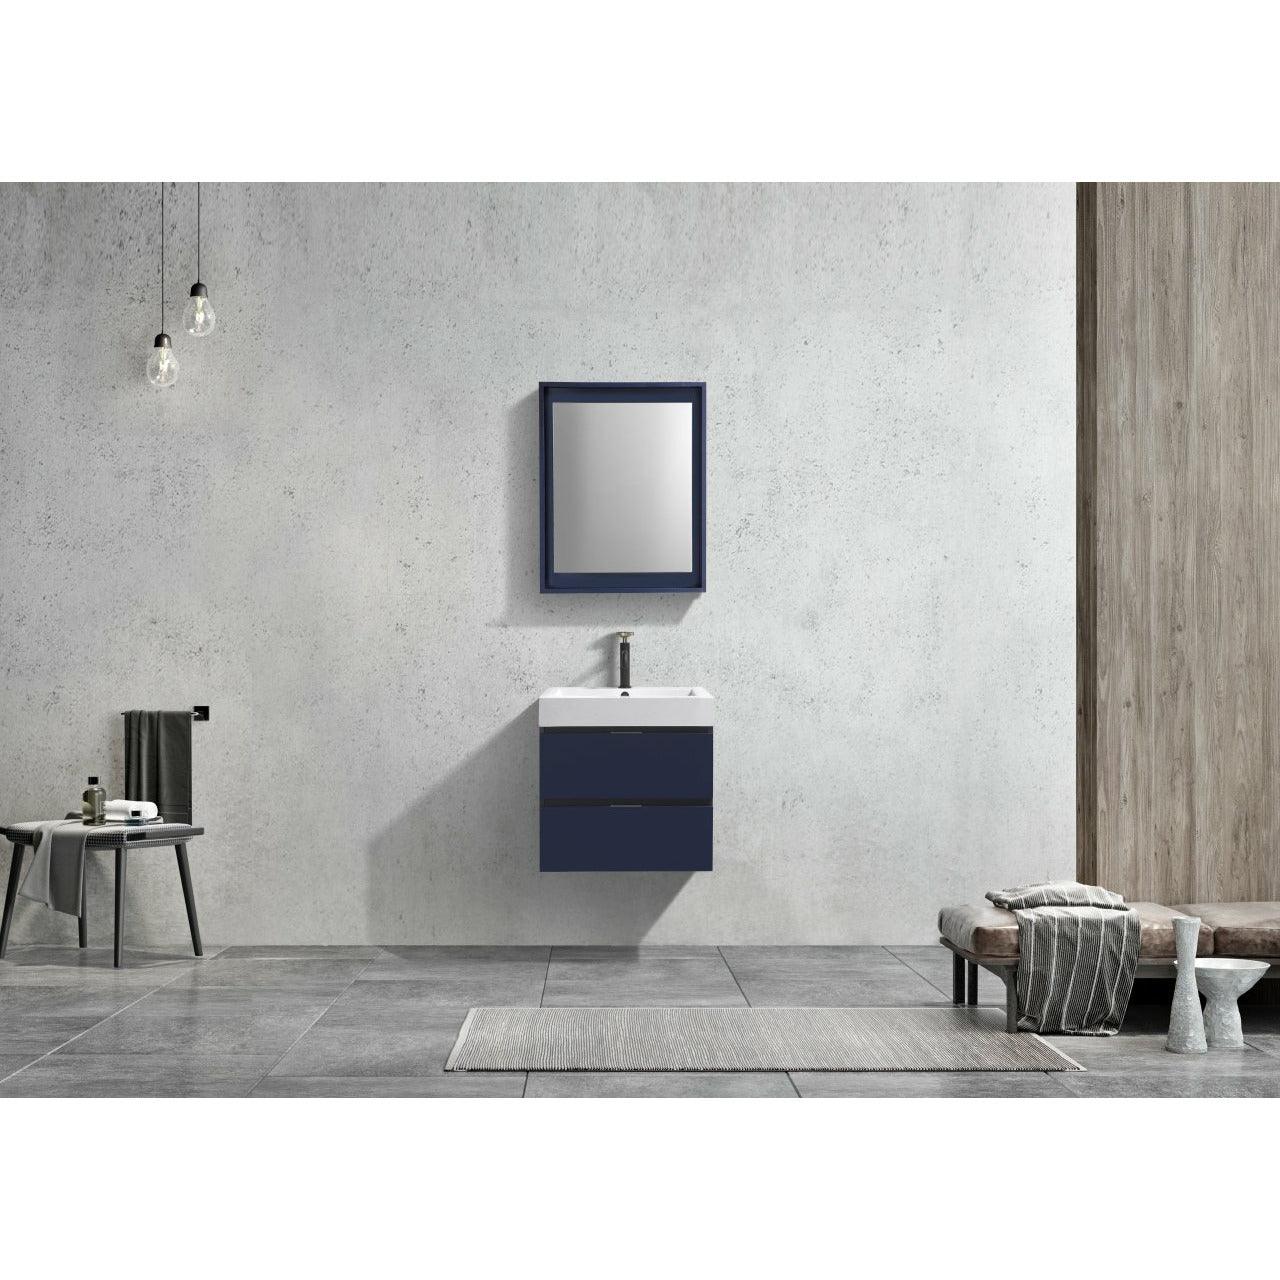 
  
  KubeBath Bliss Single Wall Mount Modern Bathroom Vanity
  
